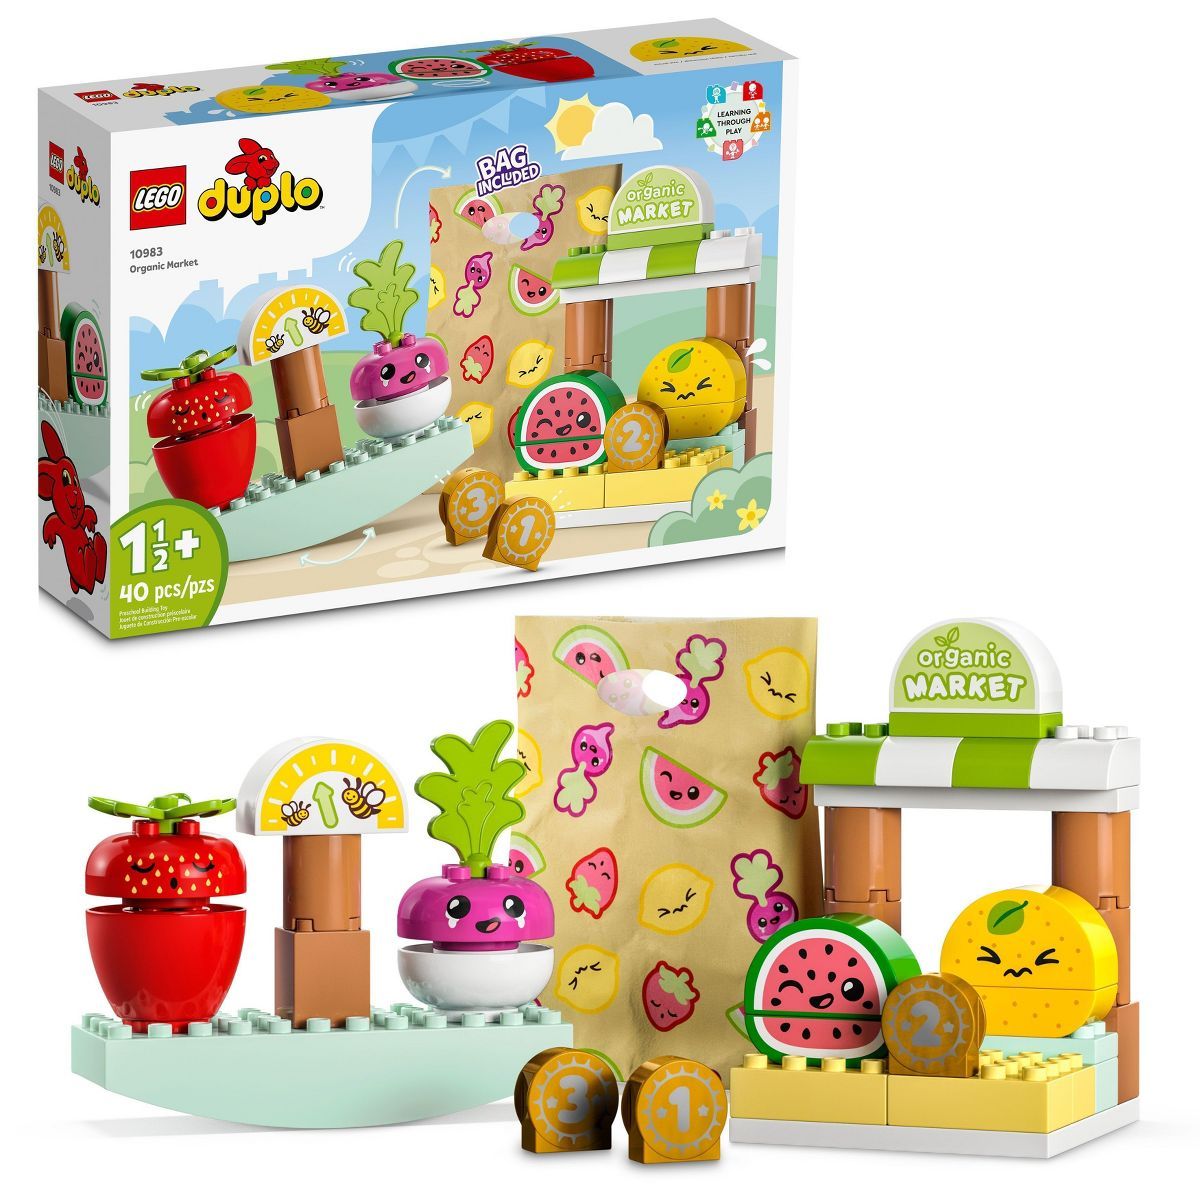 LEGO DUPLO My First Organic Market Toddler Toys 10983 | Target